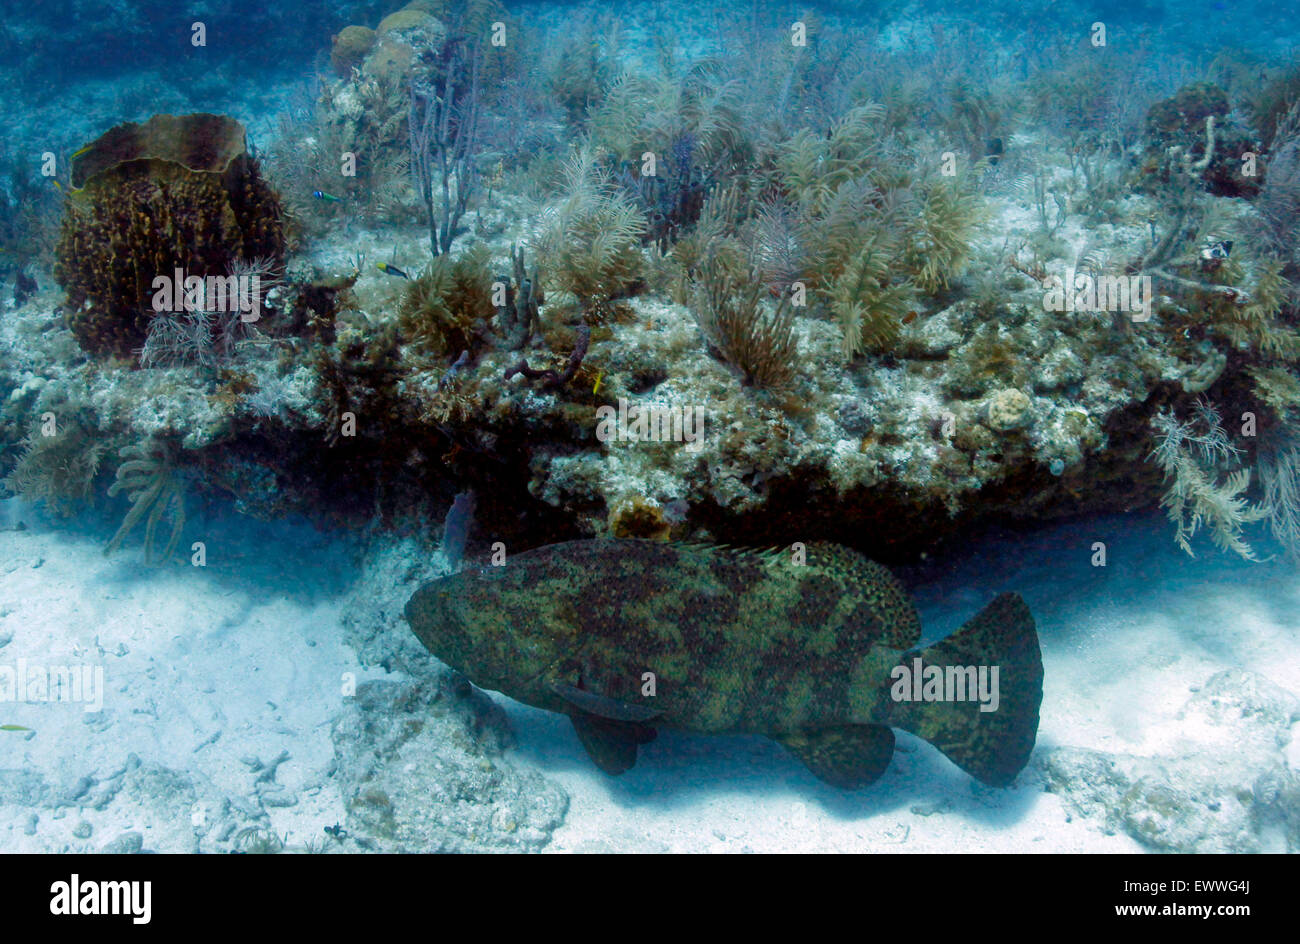 Ein Goliath Grouper schwimmt entlang der Kante von einem Felsvorsprung in Korallen, Gorgonien und Gräser in den Gewässern südlich von Key West abgedeckt. Stockfoto